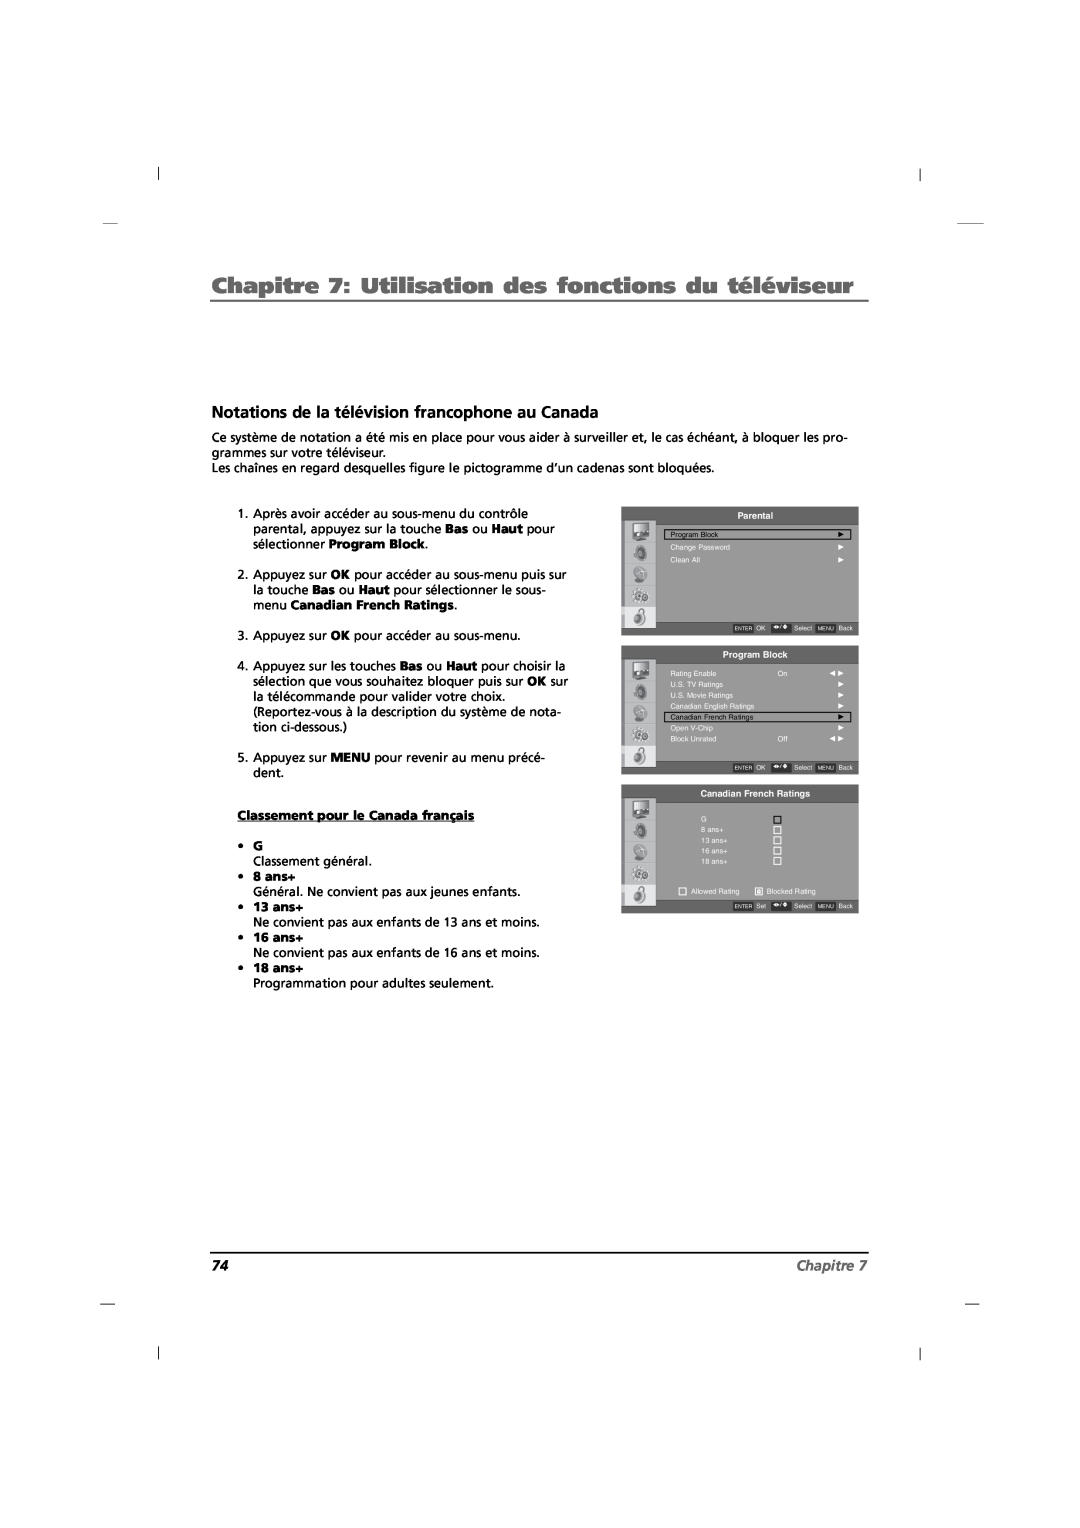 RCA J32HE720 manual Notations de la télévision francophone au Canada, Chapitre 7 Utilisation des fonctions du téléviseur 